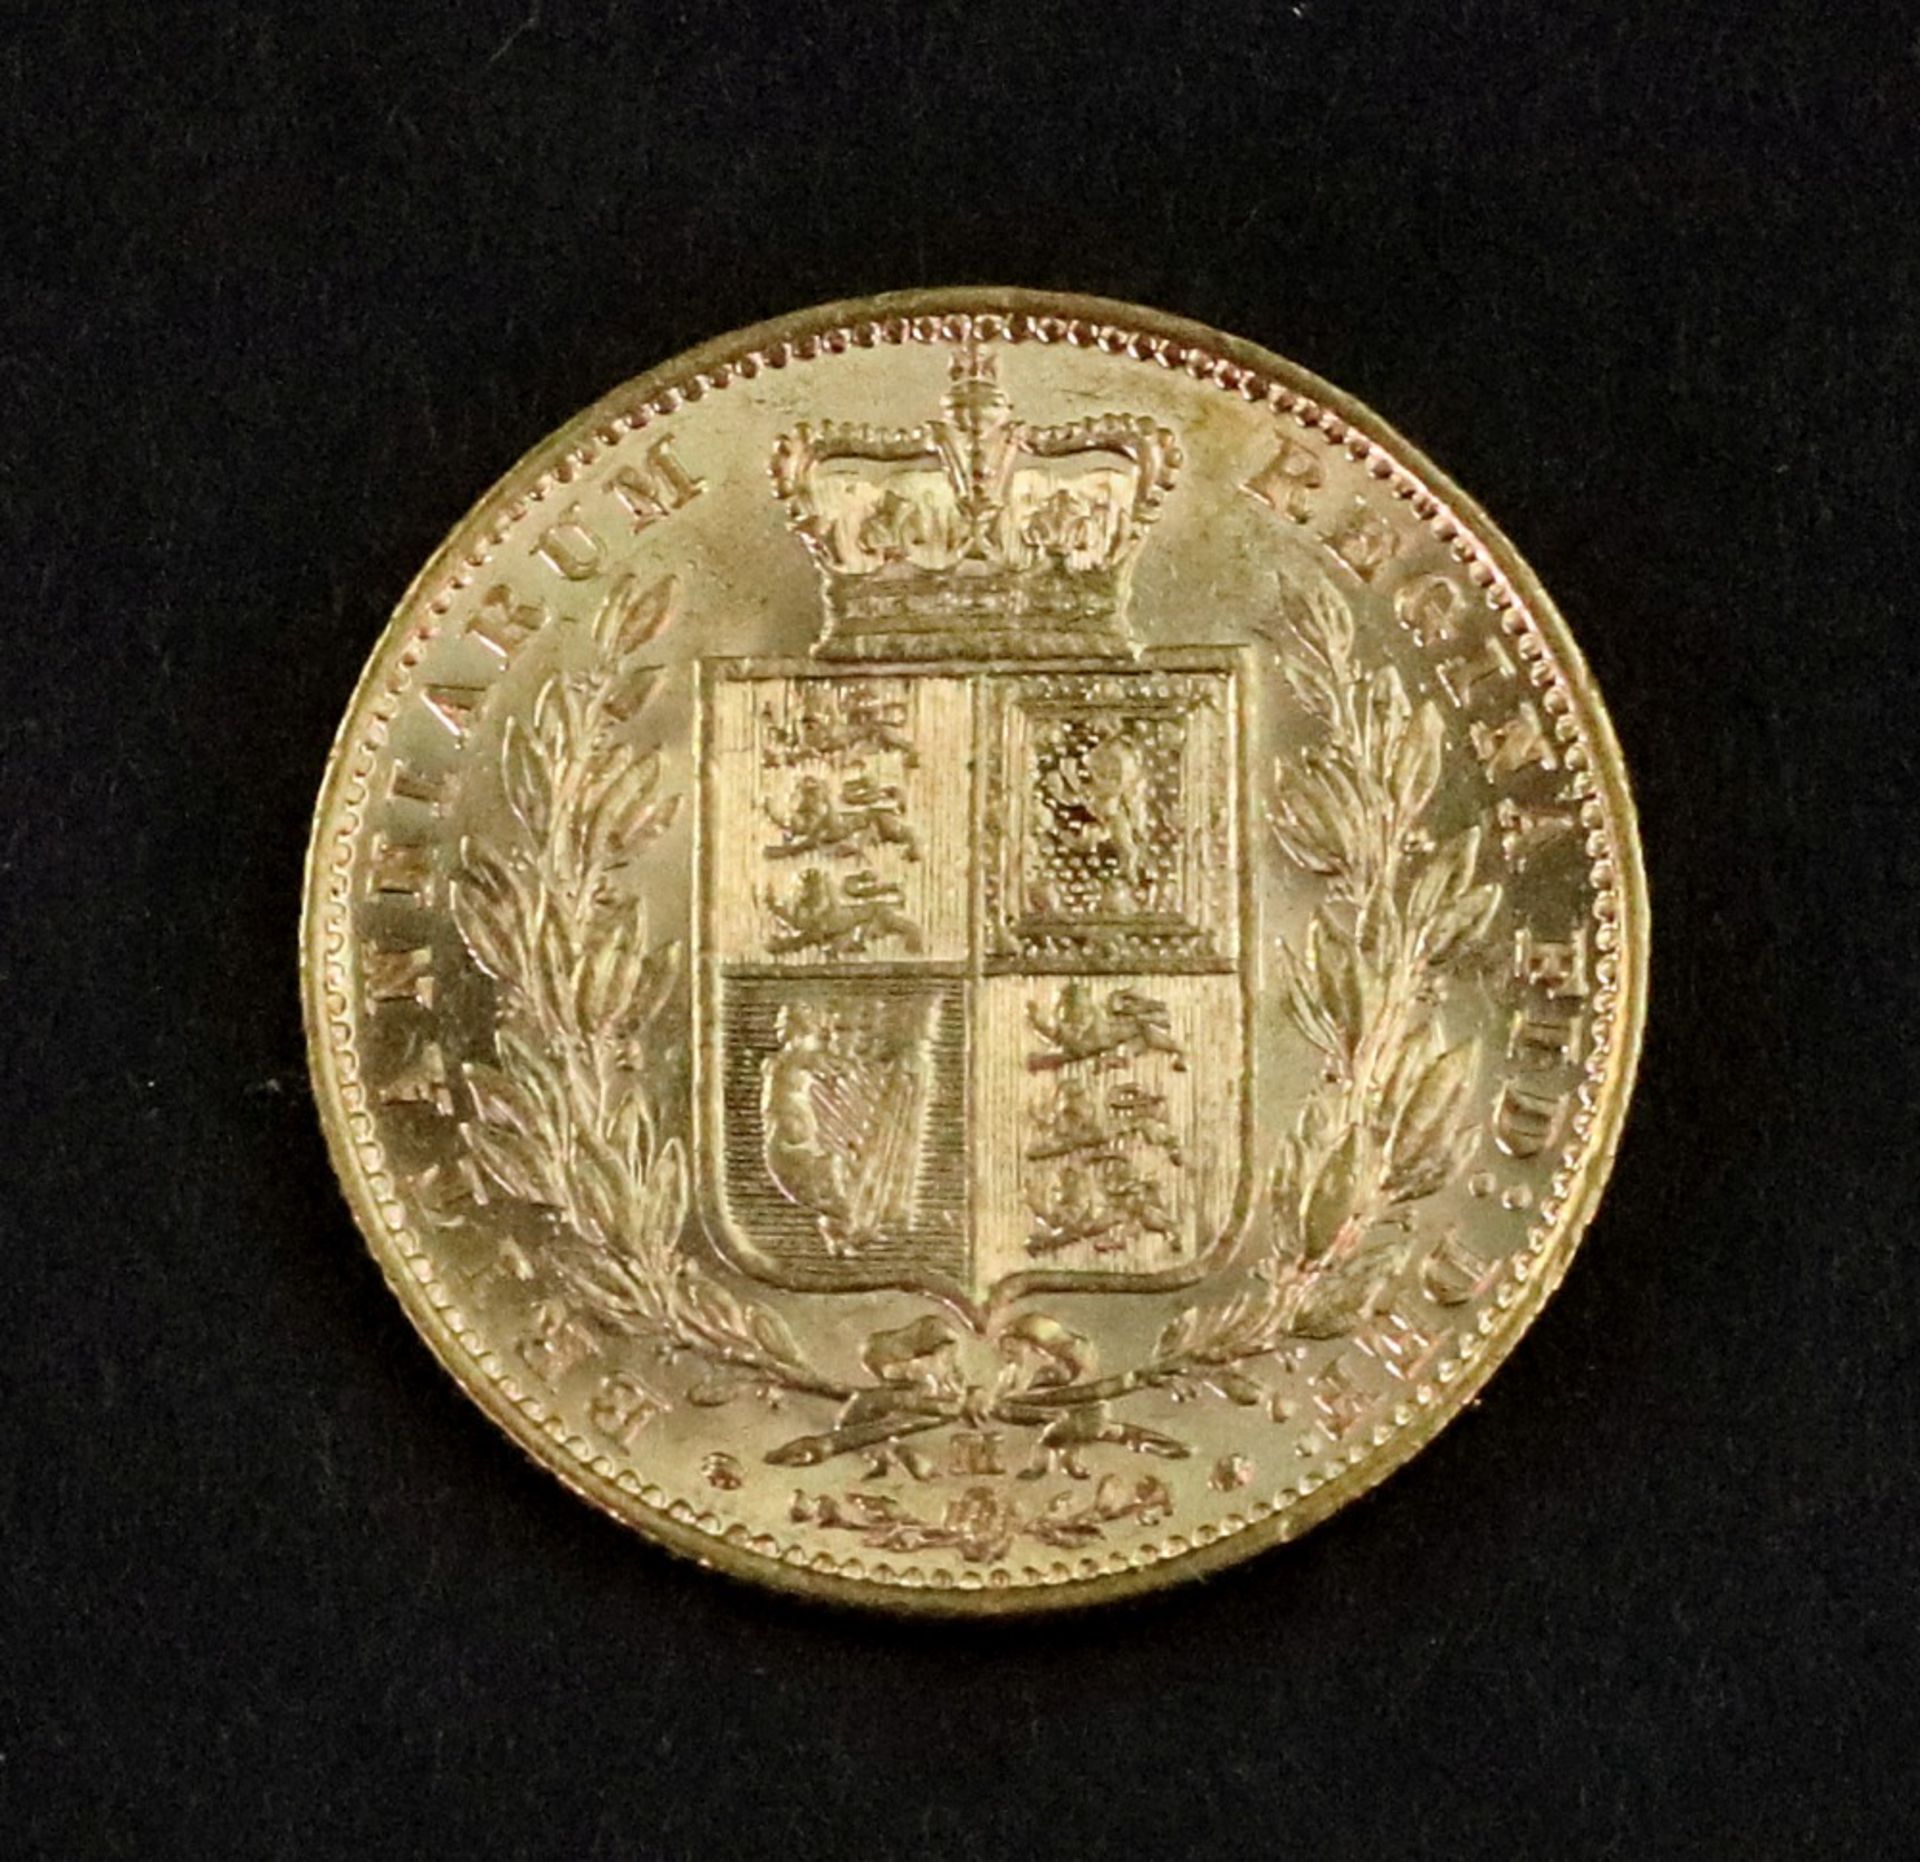 Queen Victoria sovereign 1883.